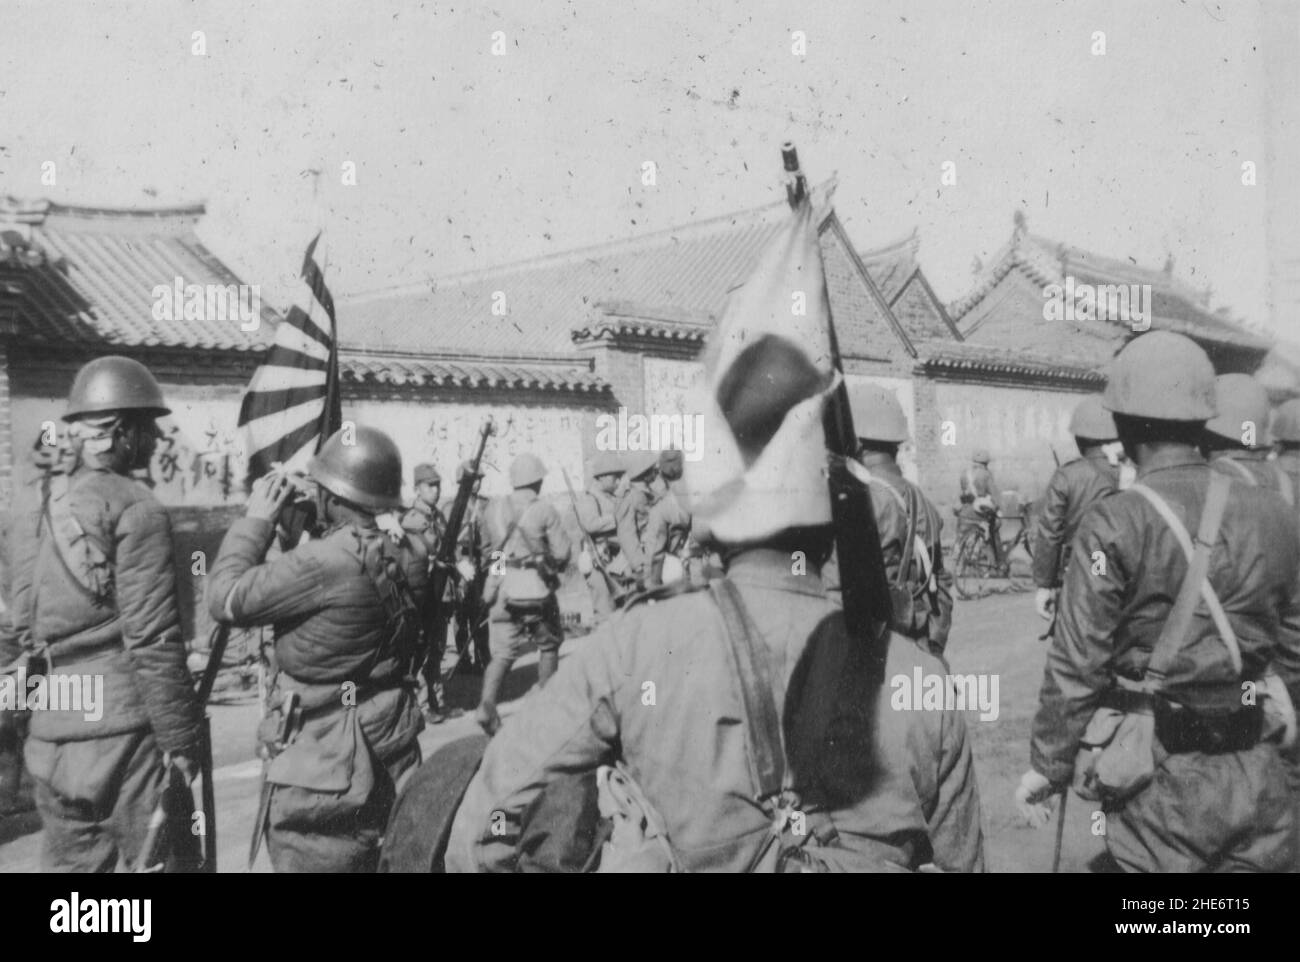 Zweiter Chinesisch-Japanischer Krieg, 1937-1945. Pro-japanische chinesische Soldaten kooperieren mit japanischen Landetruppen der Marine während einer Operation um Weihaiwei, Provinz Shandong, um 1939. Die kaiserliche japanische Marine marschierte Anfang 1938 in Shandong ein, eroberte lebenswichtige Küstenstädte und besetzte sie bis zur Kapitulation des japanischen Imperium im Jahr 1945. Stockfoto